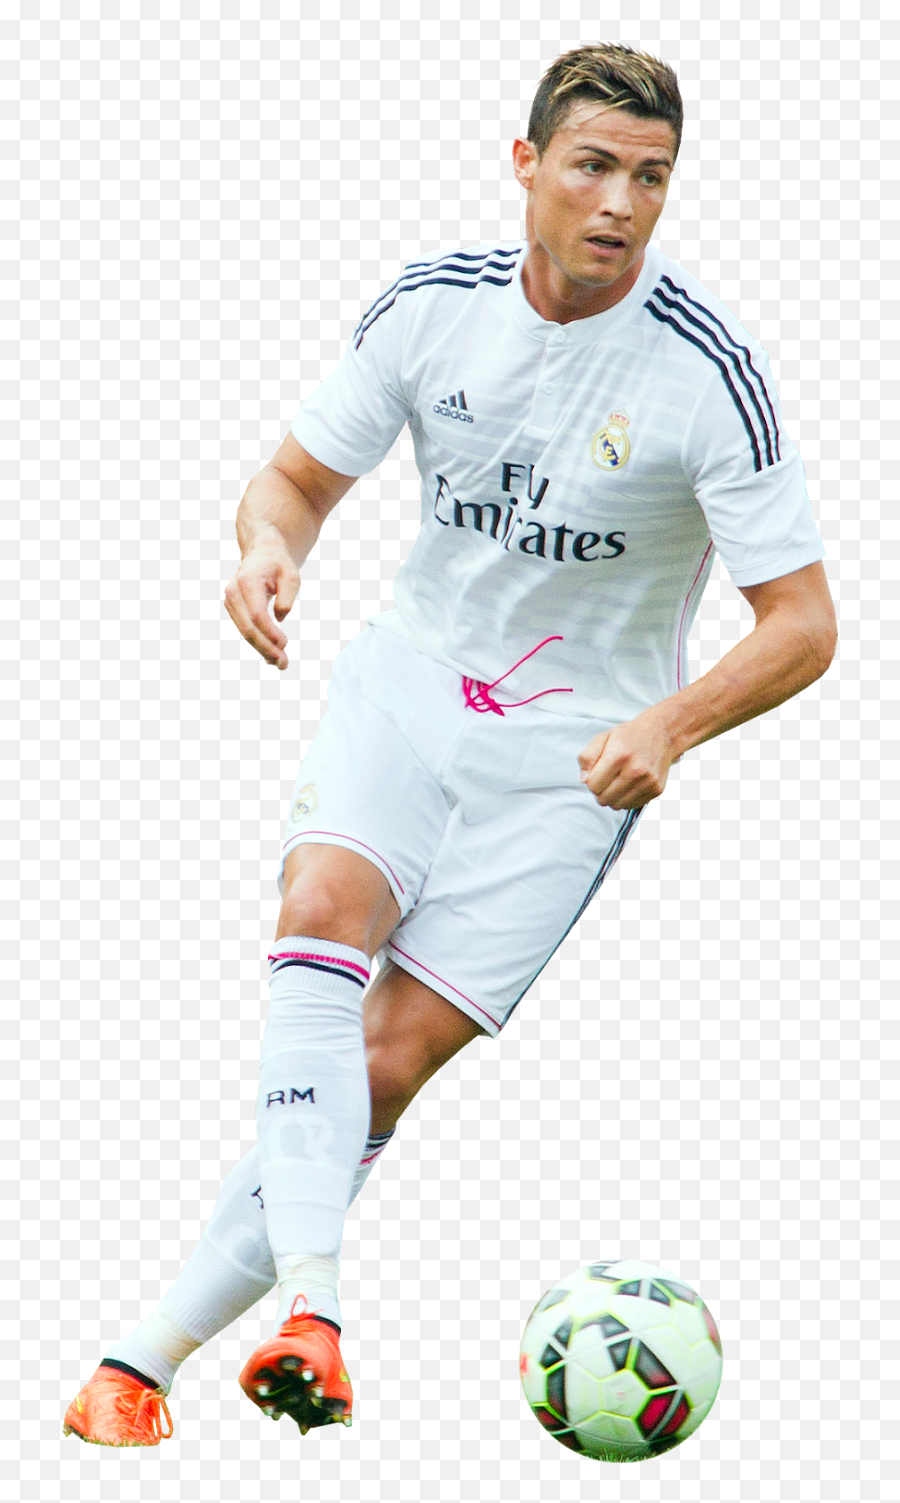 Png Transparent Ronaldo - Imagem Cristiano Ronaldo Png,Cristiano Ronaldo Png